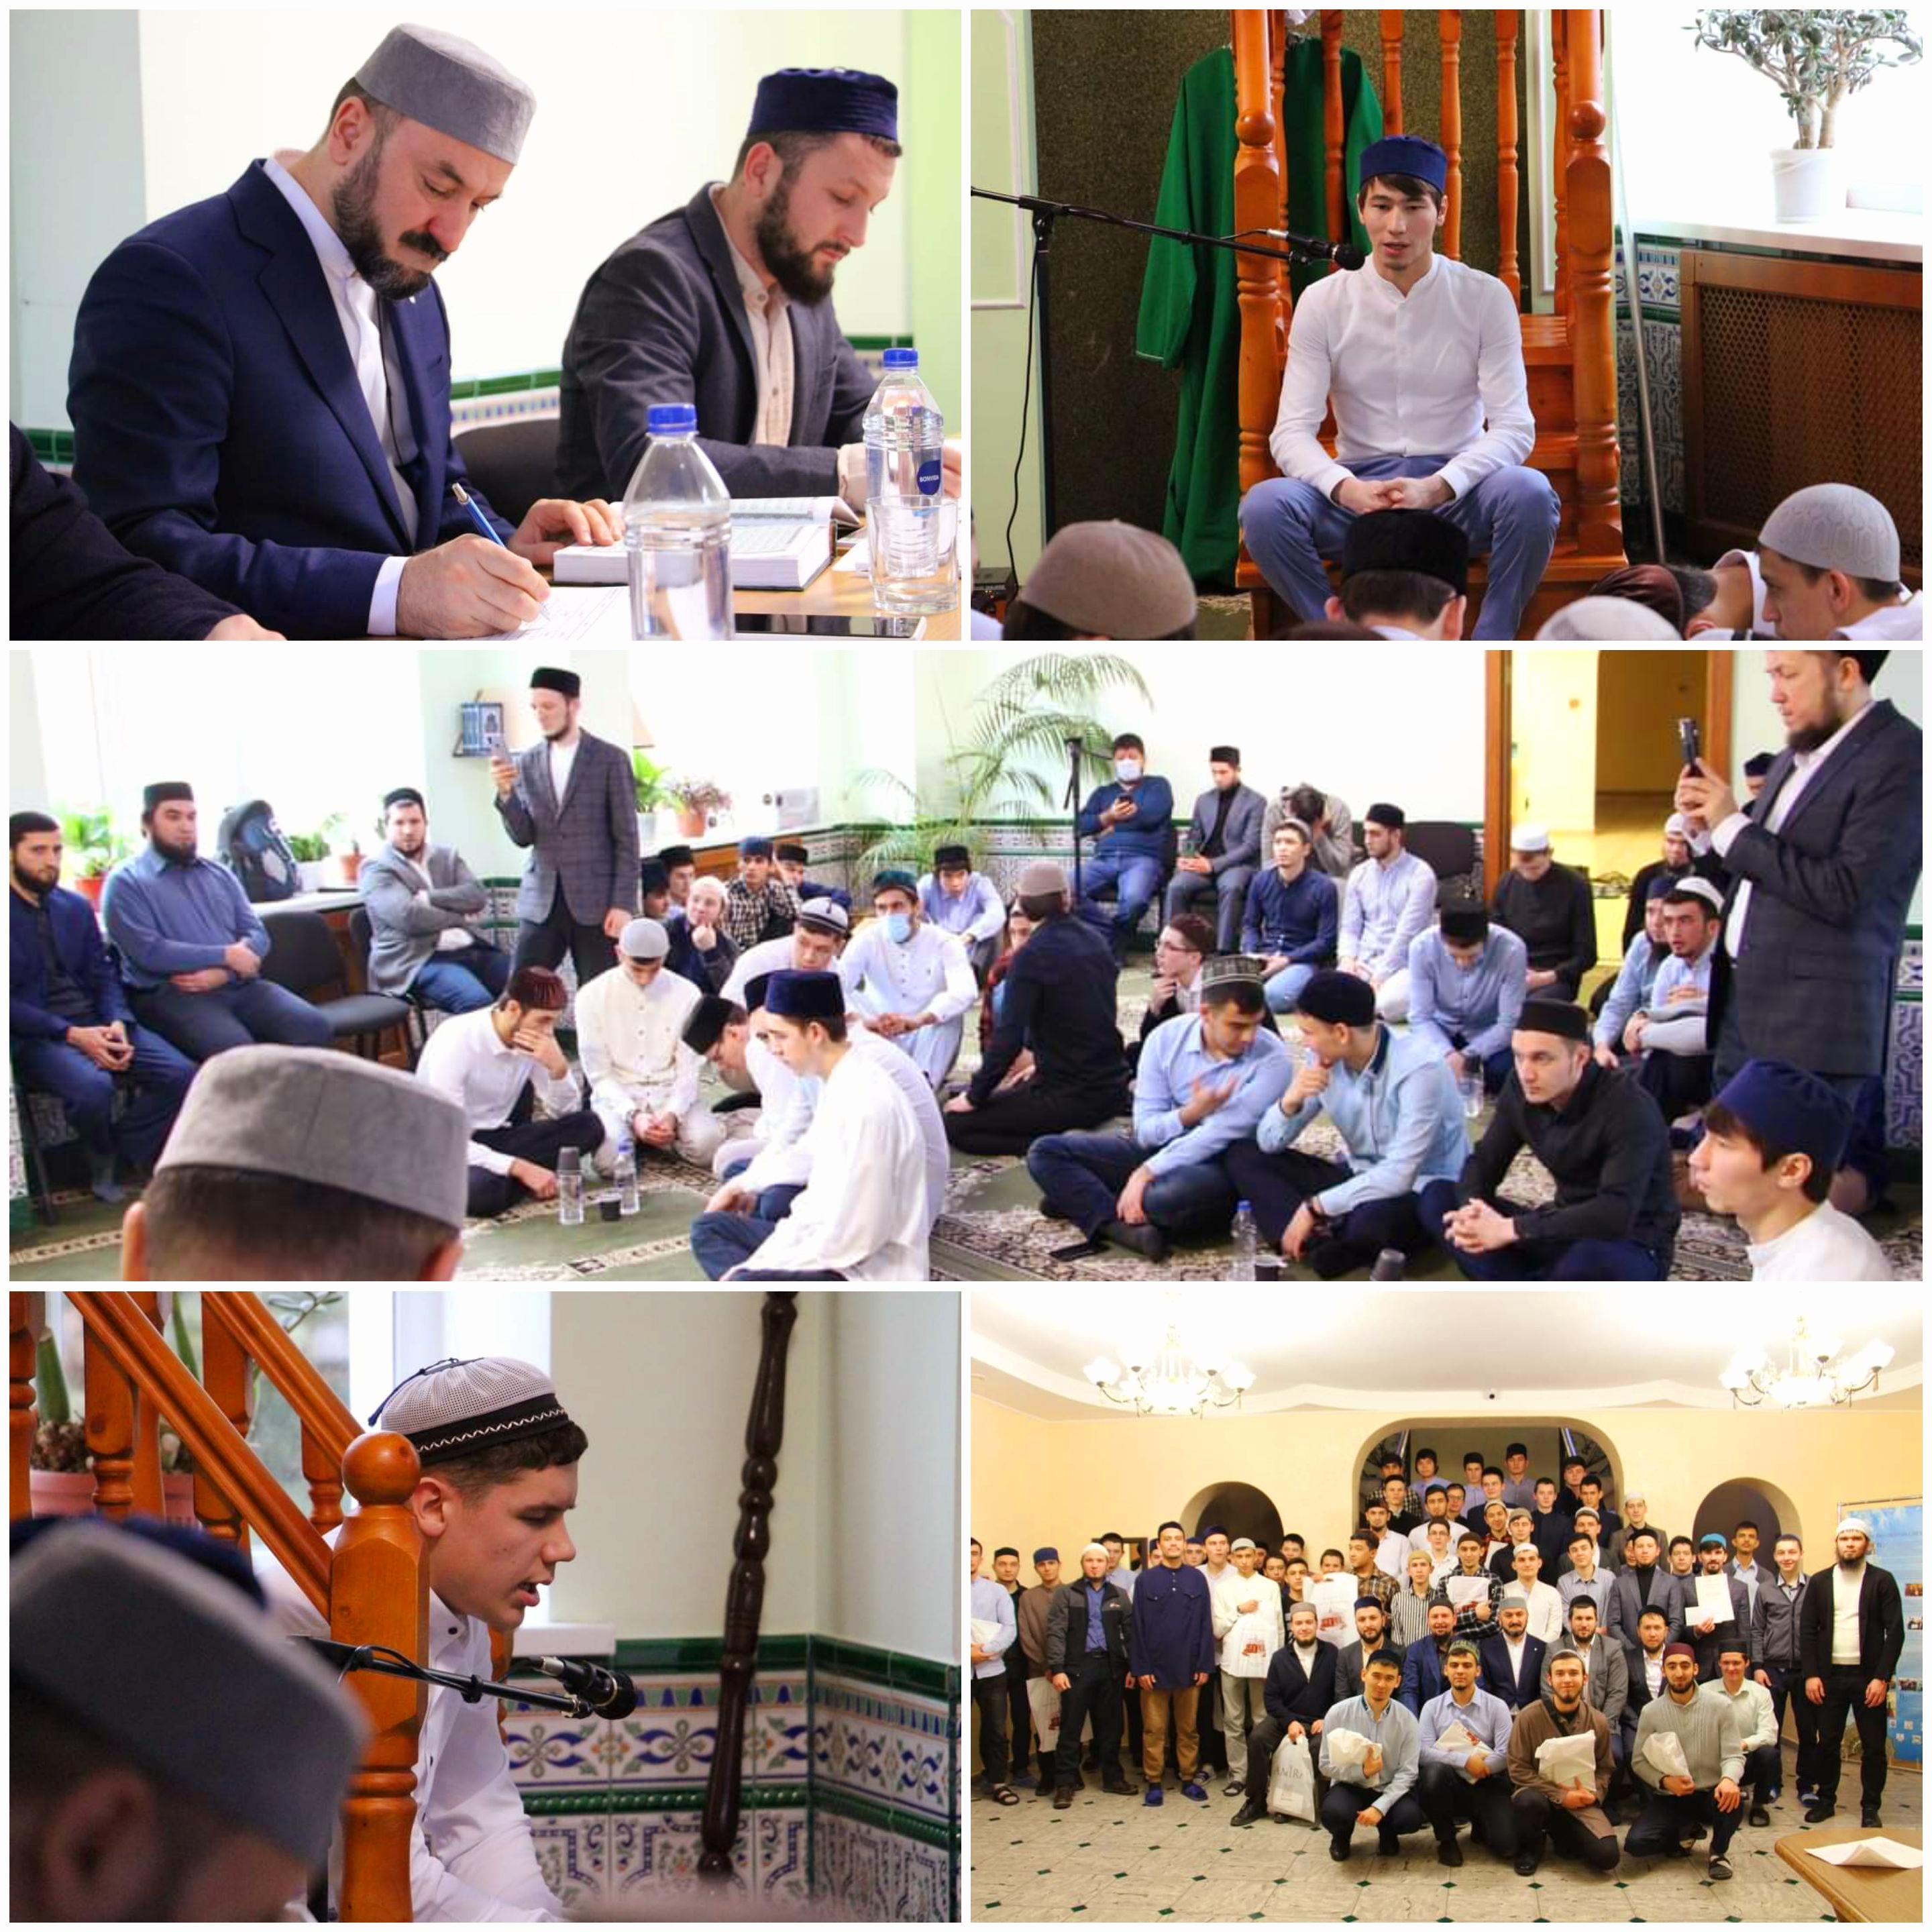 المسابقة أقيمت في المعهد الإسلامي الروسي بمدينة قازان وتضمنت مستويين اثنين